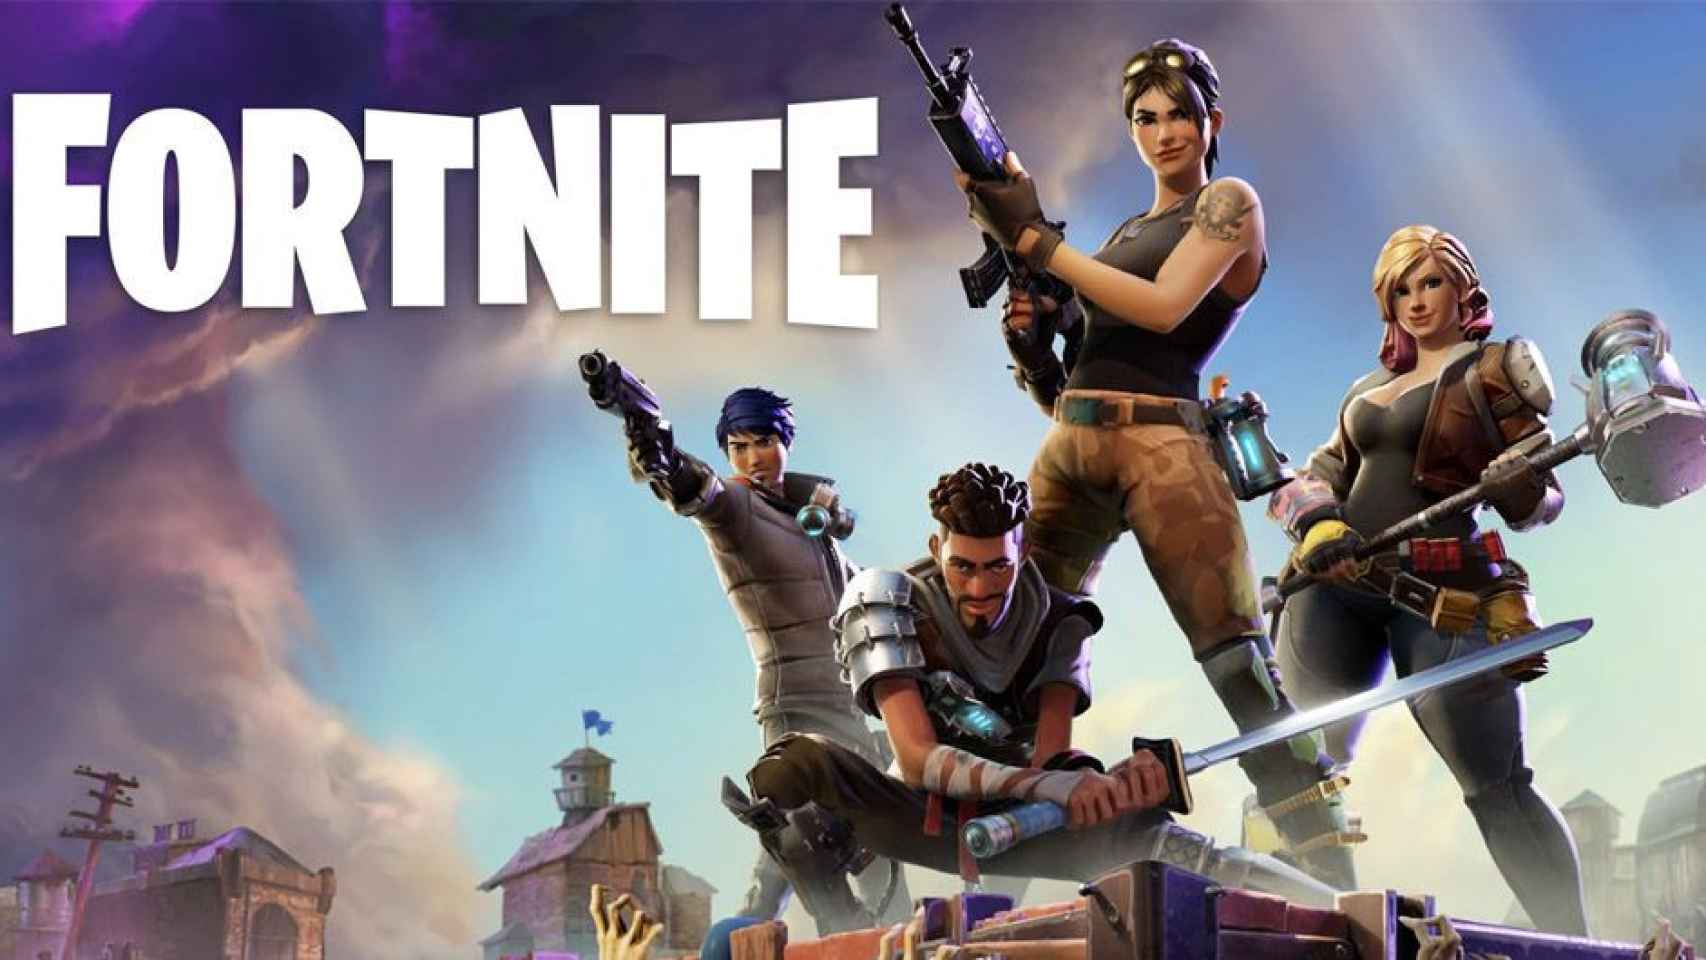 Fortnite es un videojuego gratuito desarrollado por Epic Games